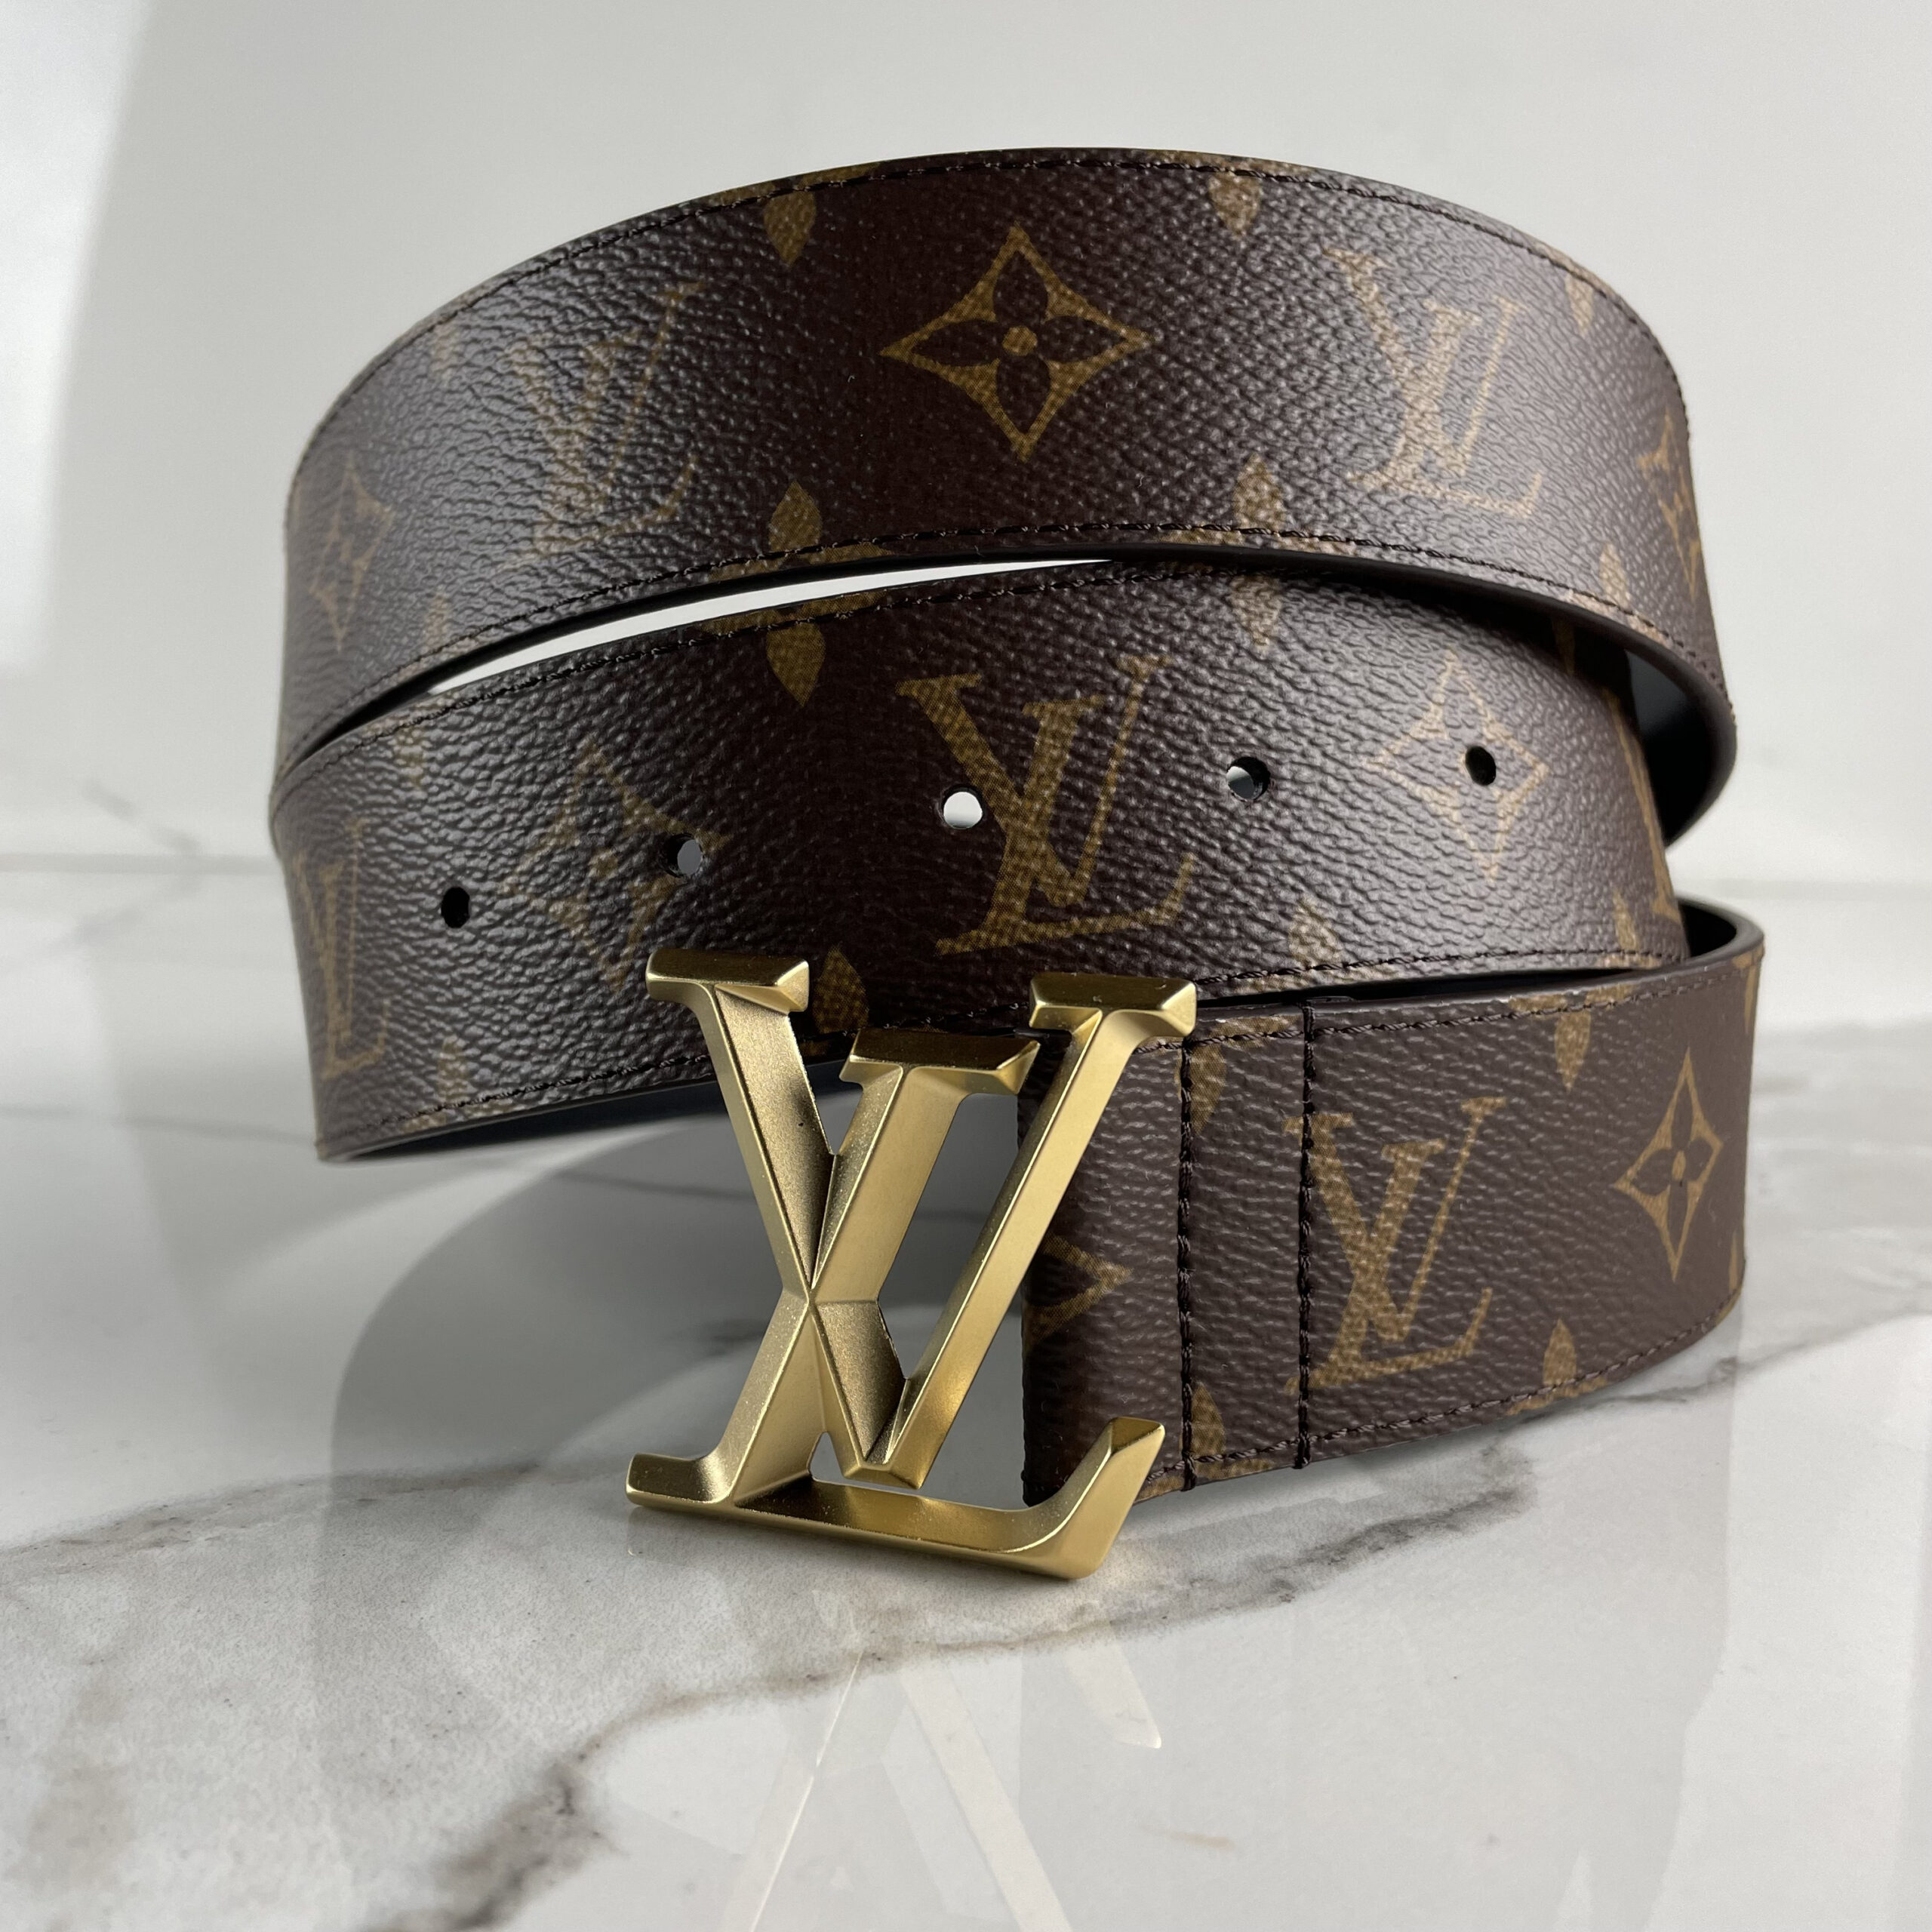 Louis Vuitton LV Eclipse 20mm Reversible Belt Black + Calf Leather. Size 75 cm